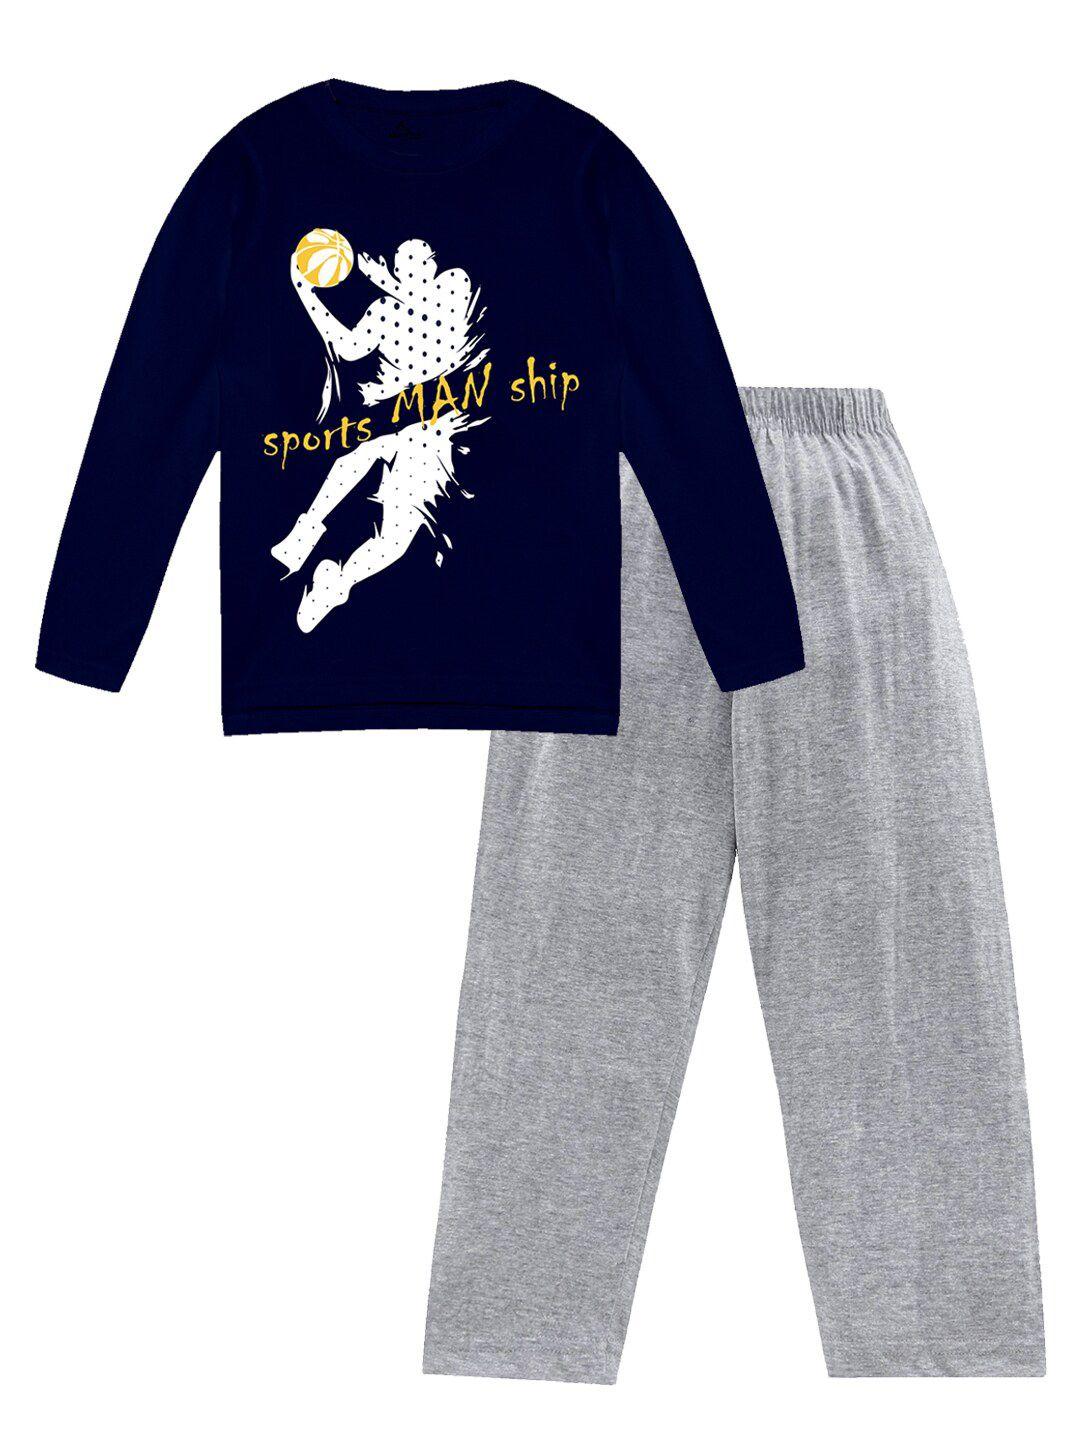 KiddoPanti Boys Printed Pure Cotton T-shirt With Pyjamas